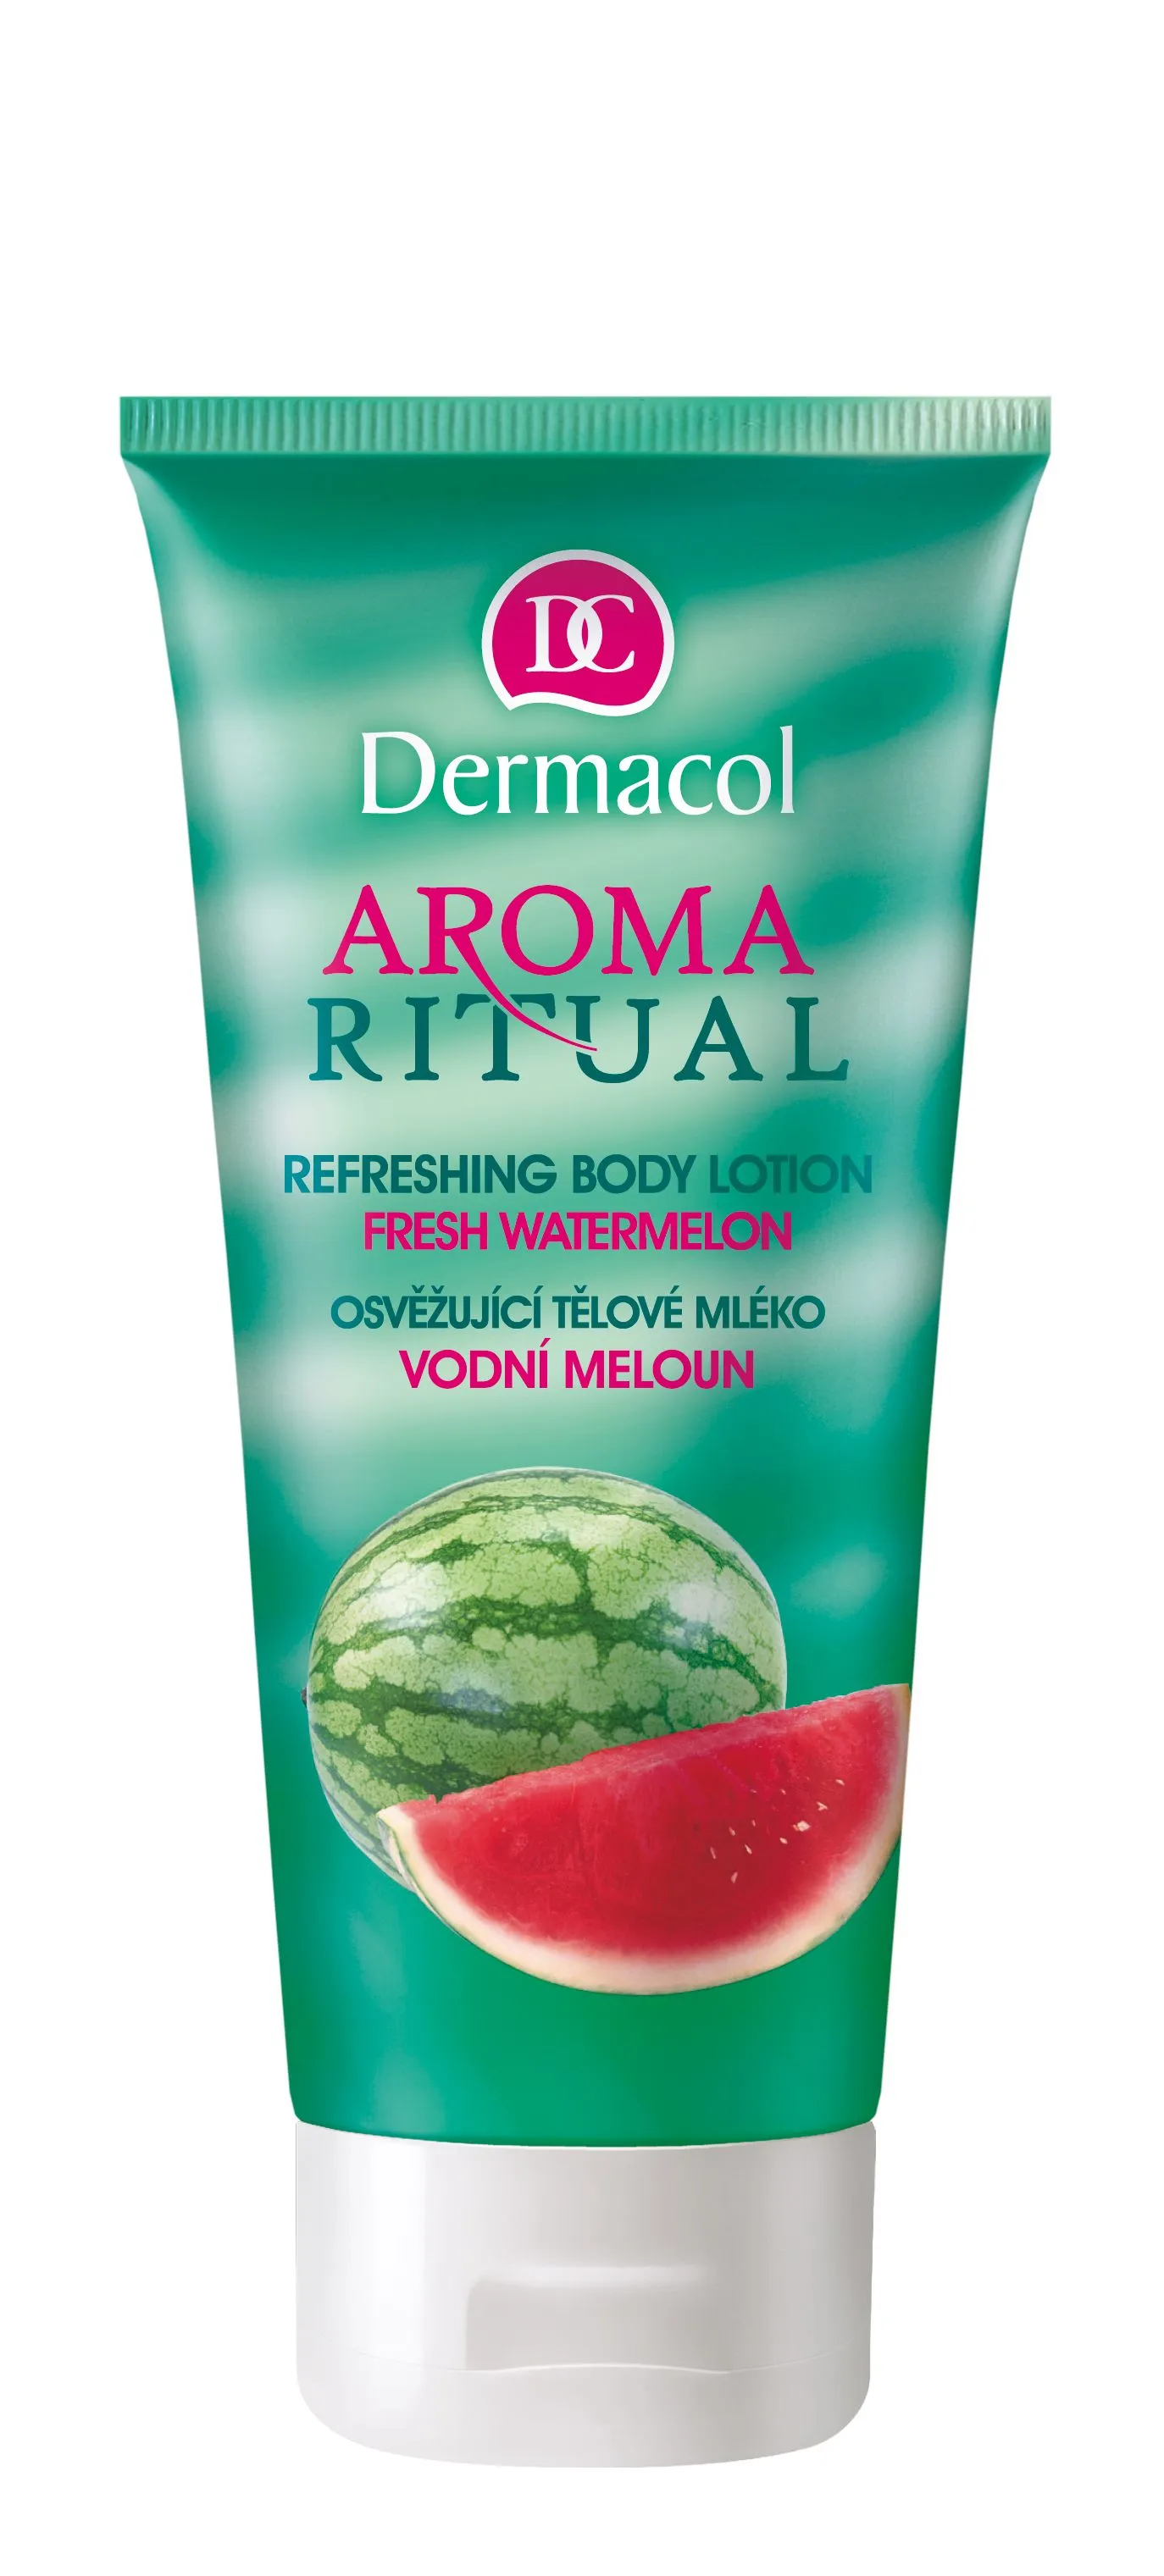 Dermacol Aroma Ritual Osvěžující tělové mléko vodní meloun 200 ml